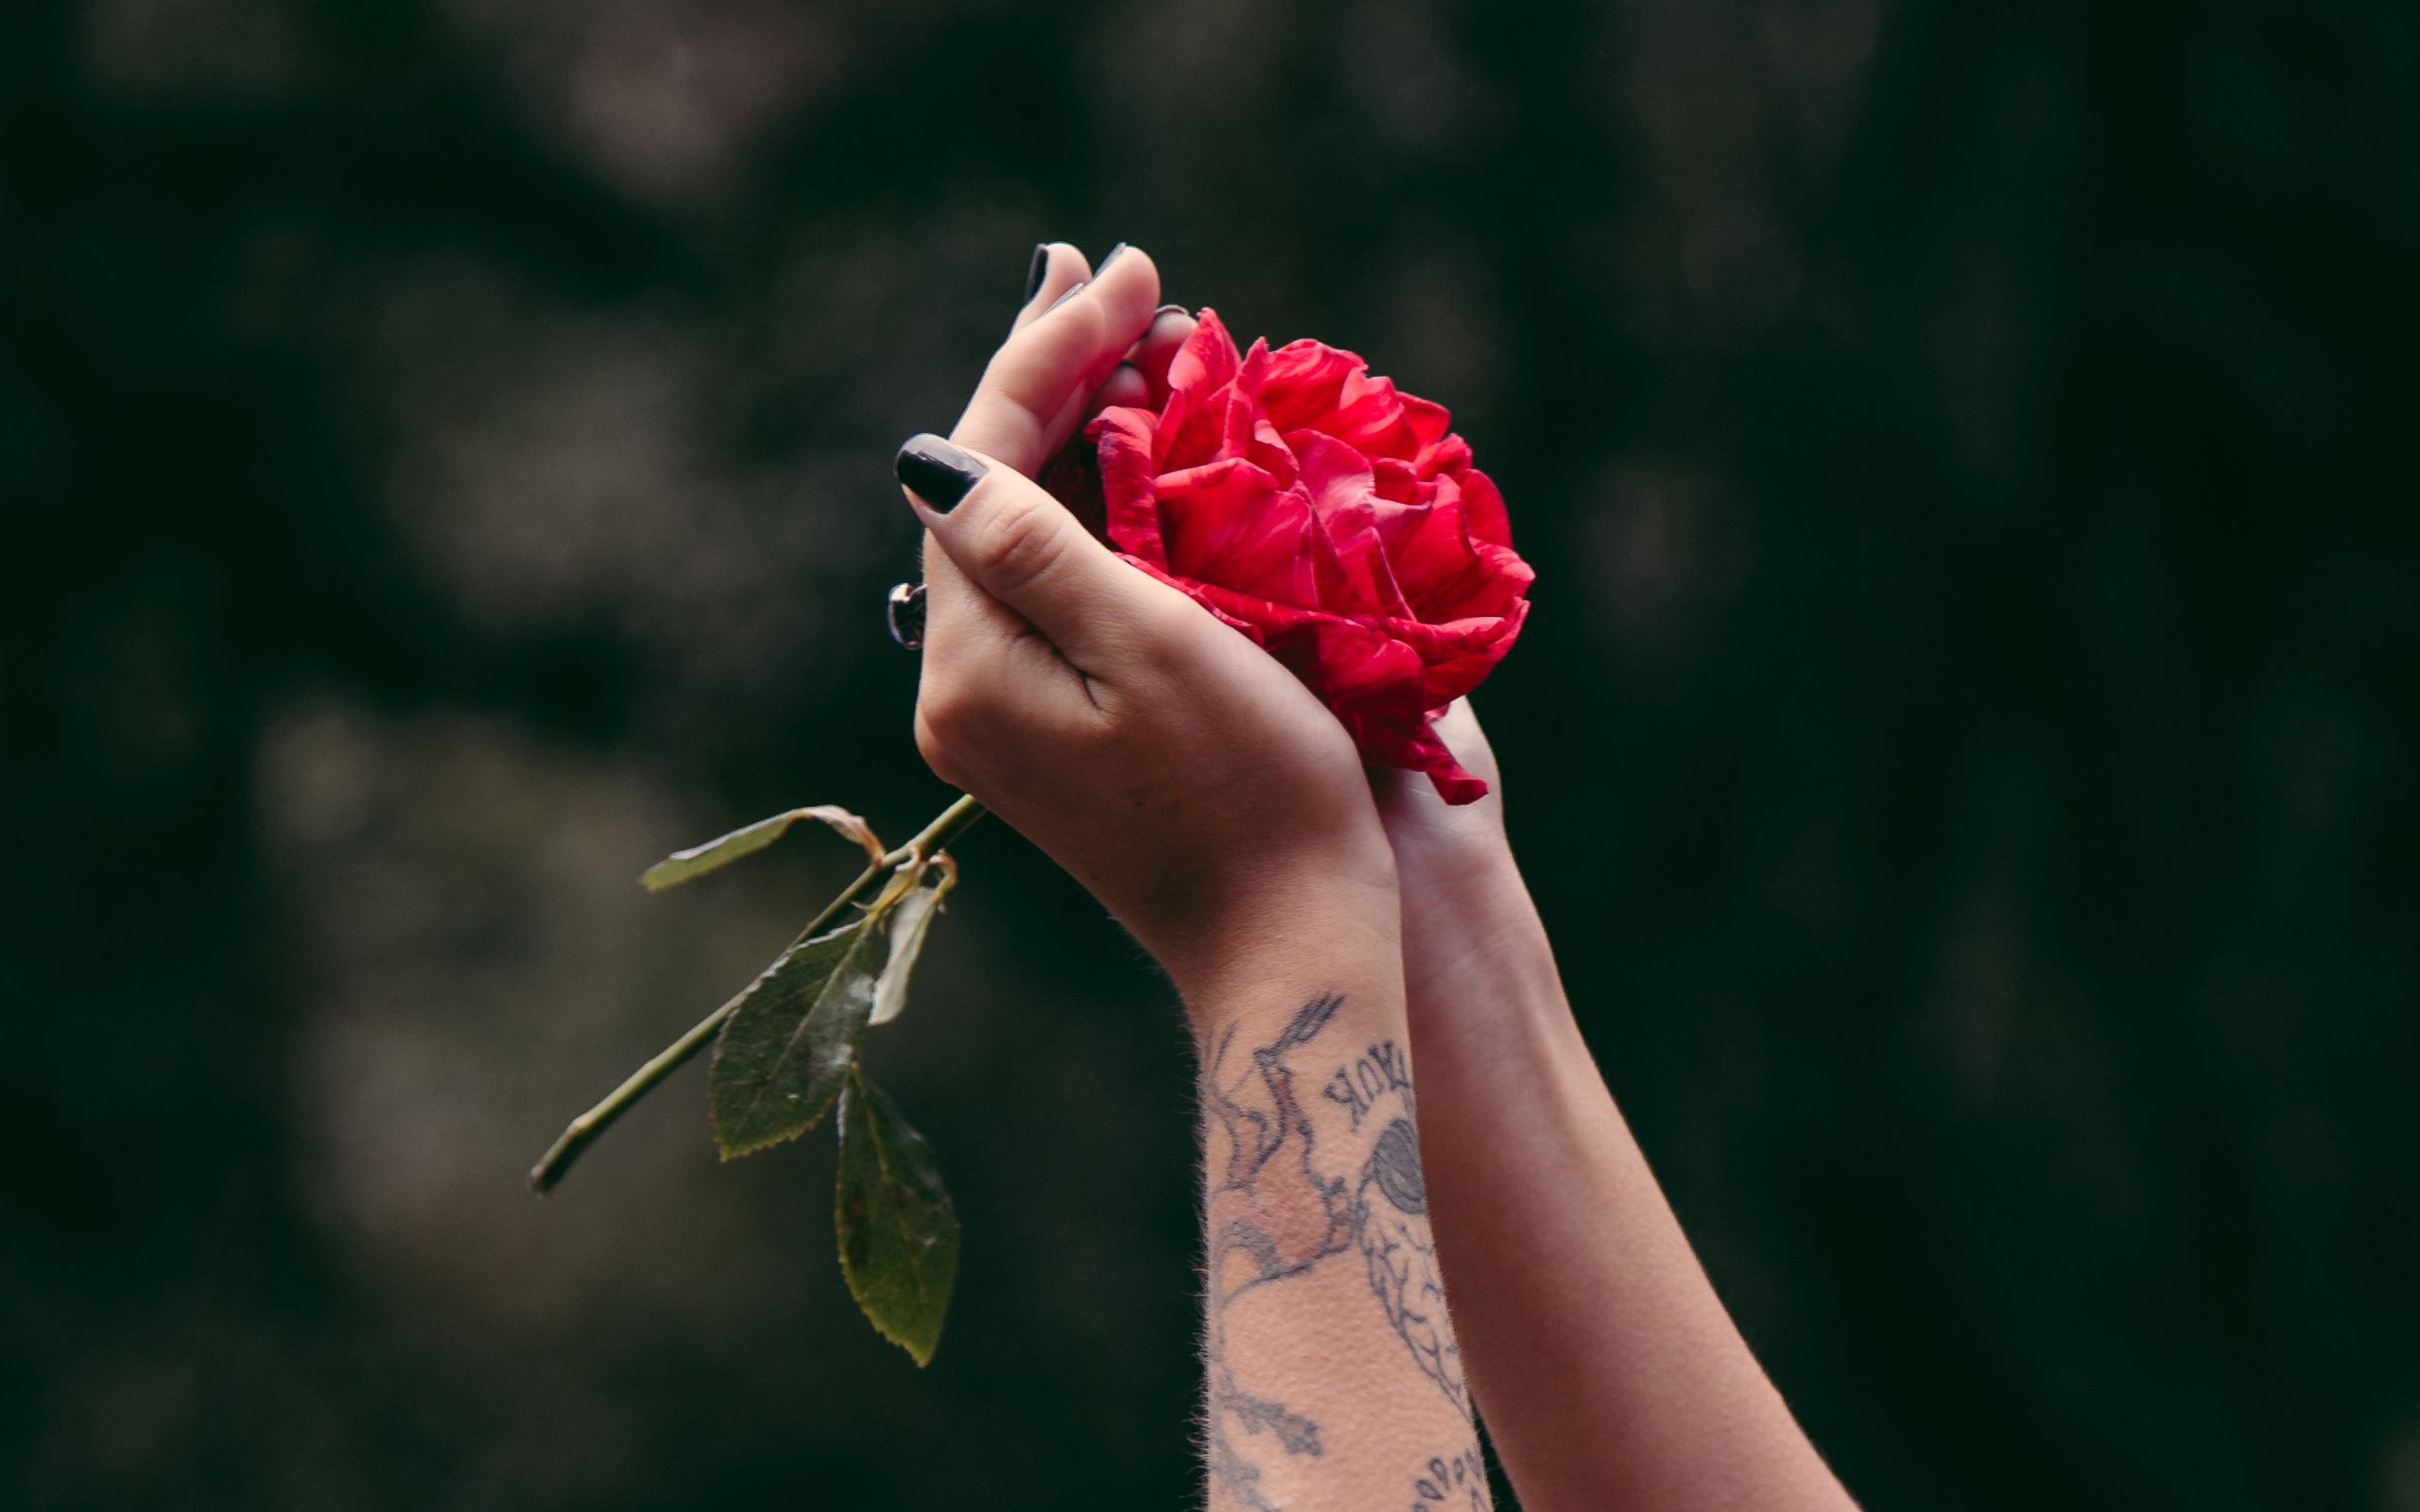 Песня держа в руках цветов букет. Цветок на руку.. Девушка с розой в руках. Цветы в руках у девушки.